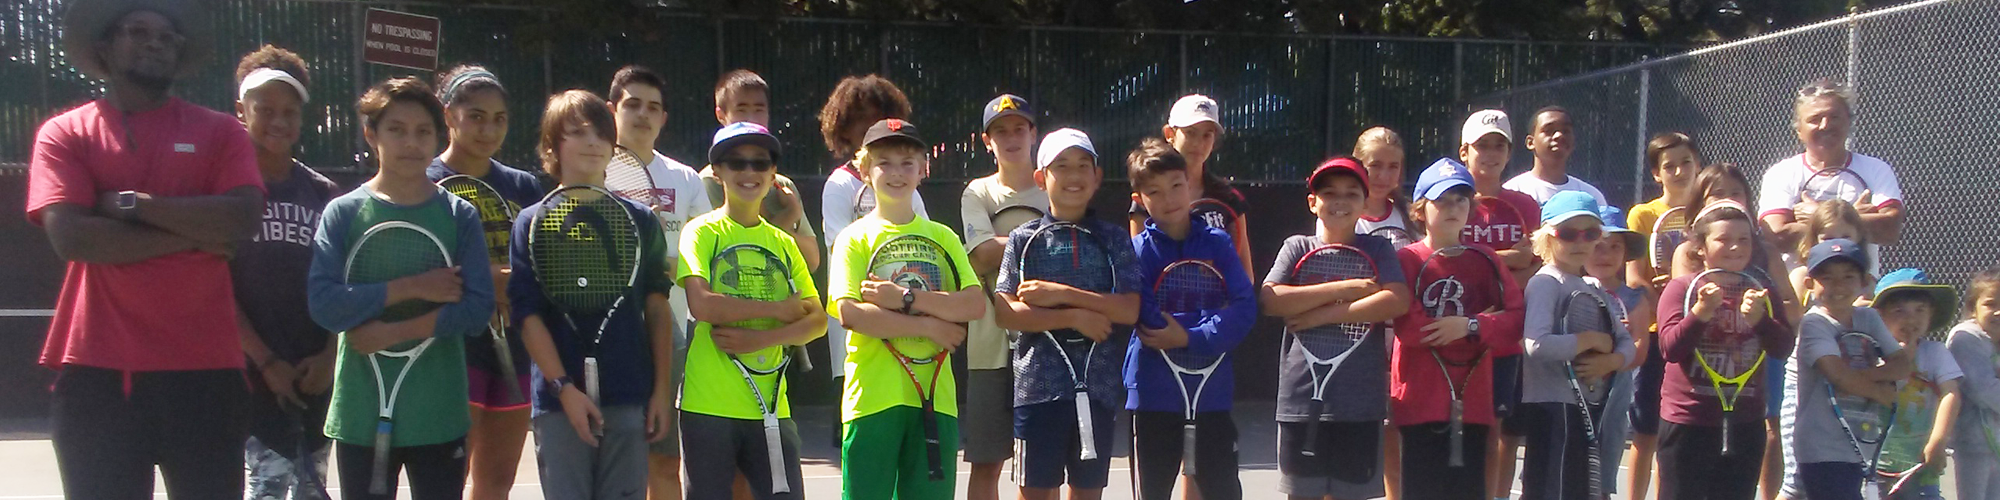 Junior Tennis Team